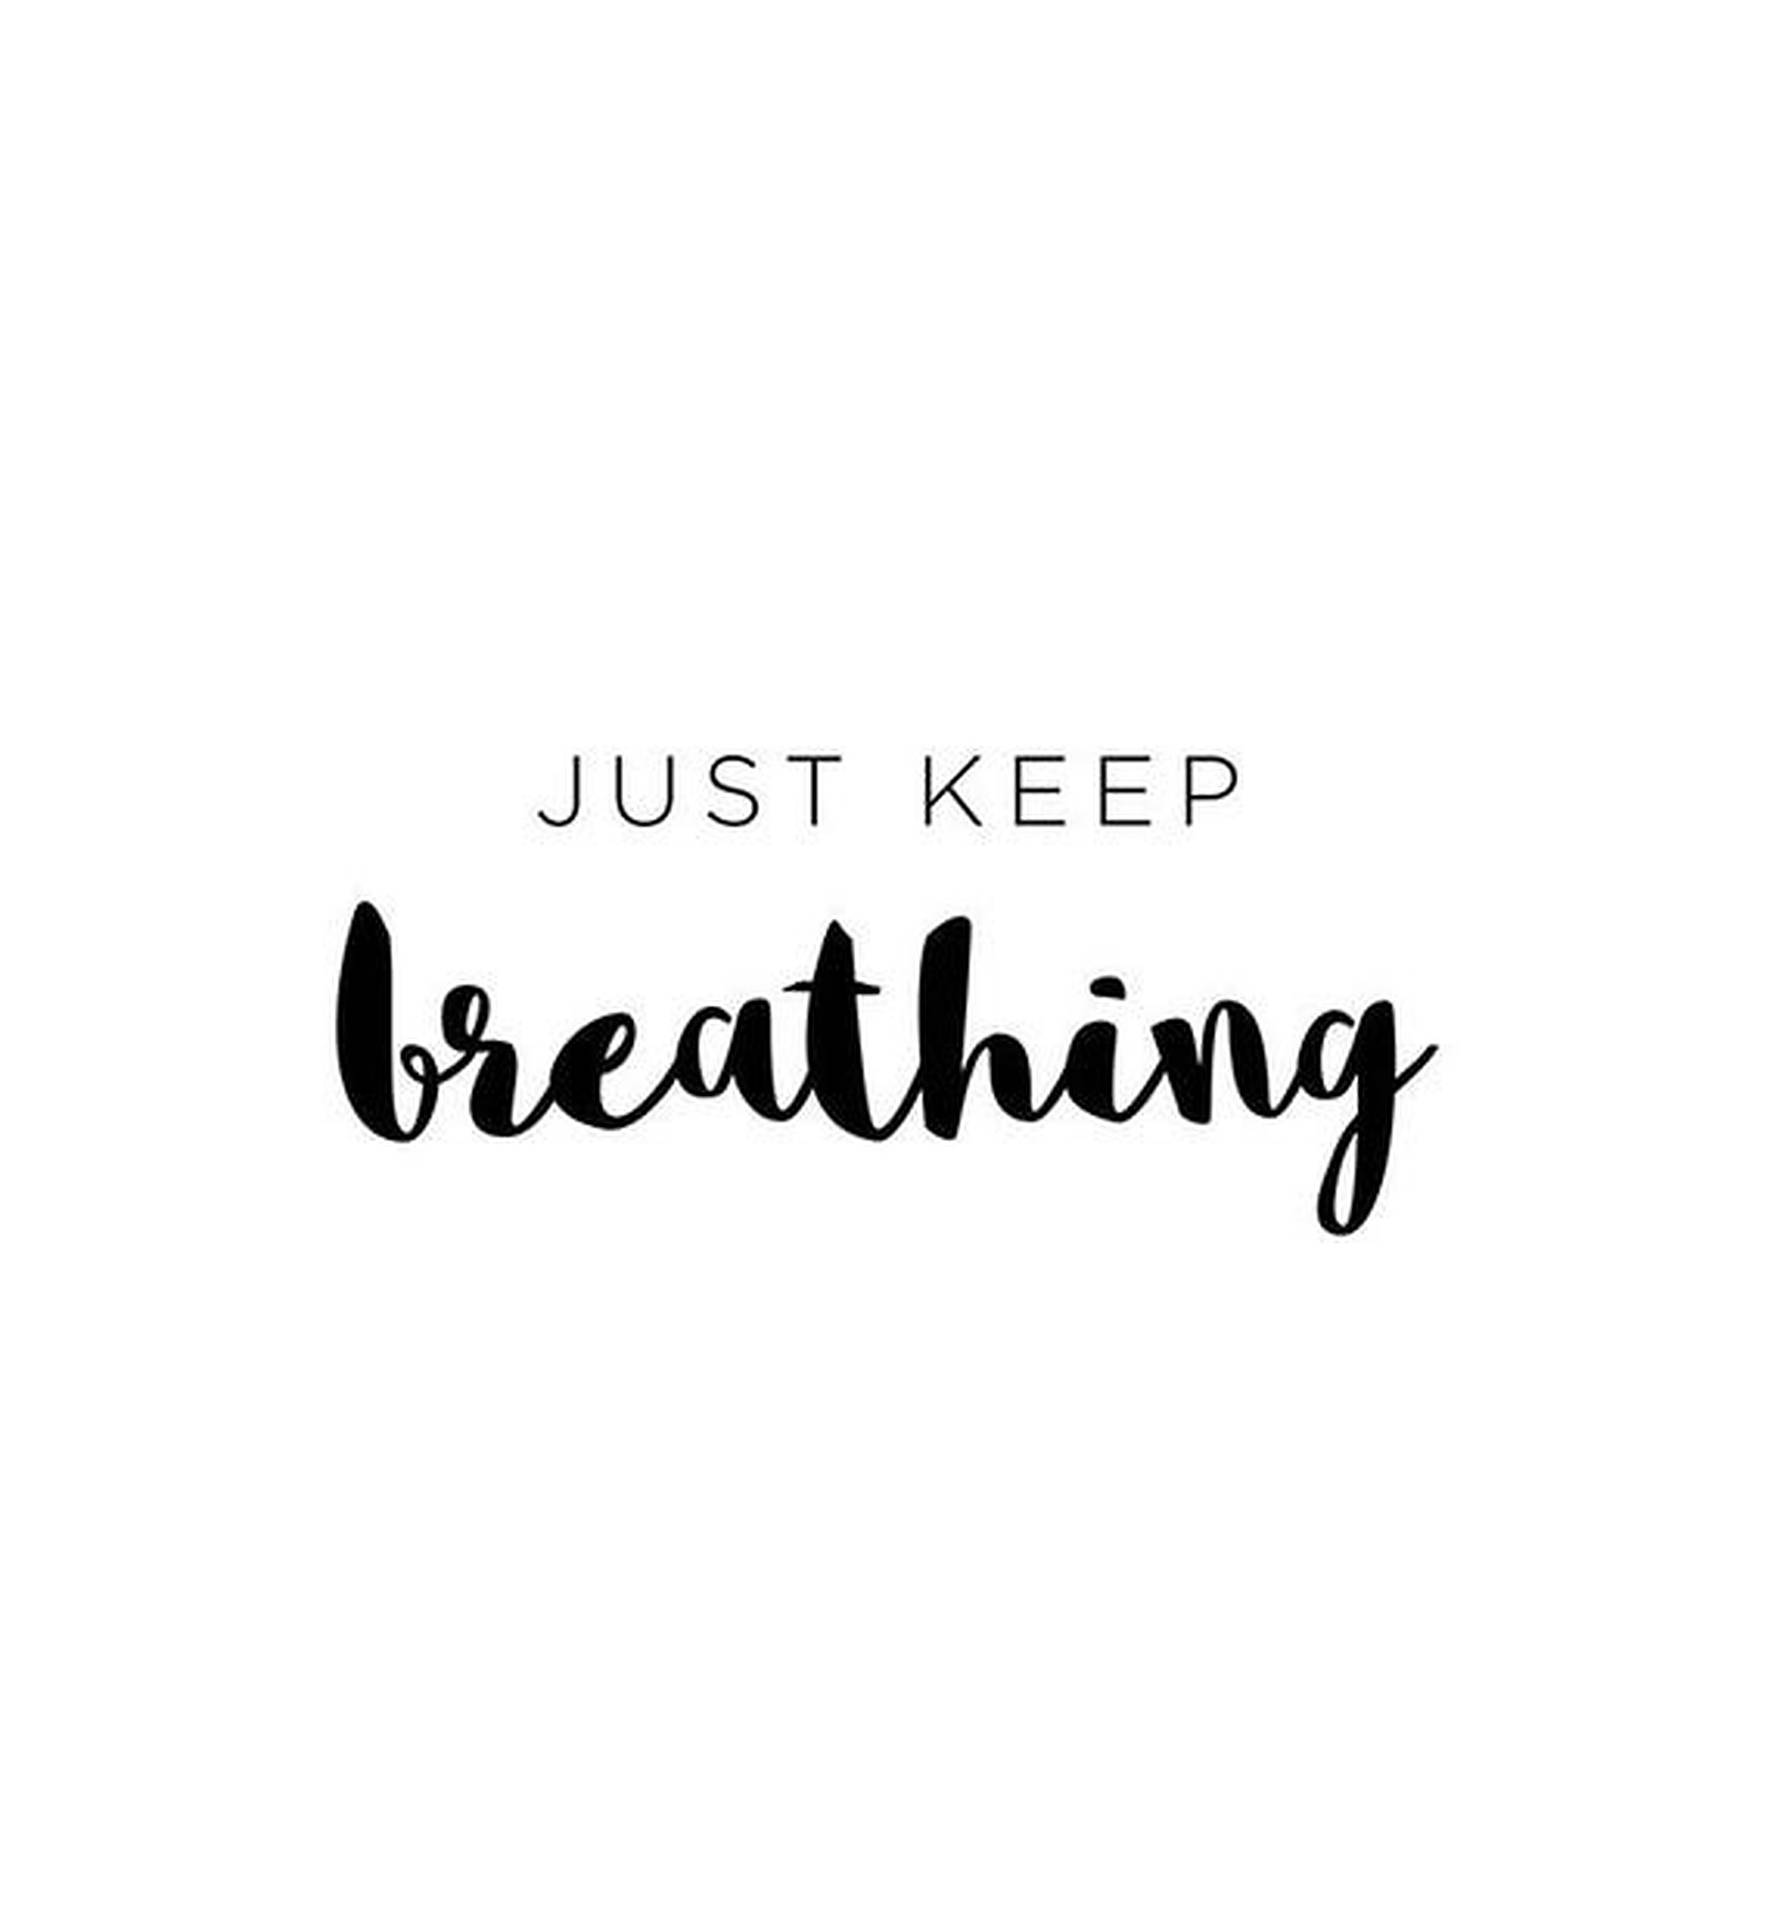 Just Keep Breathing